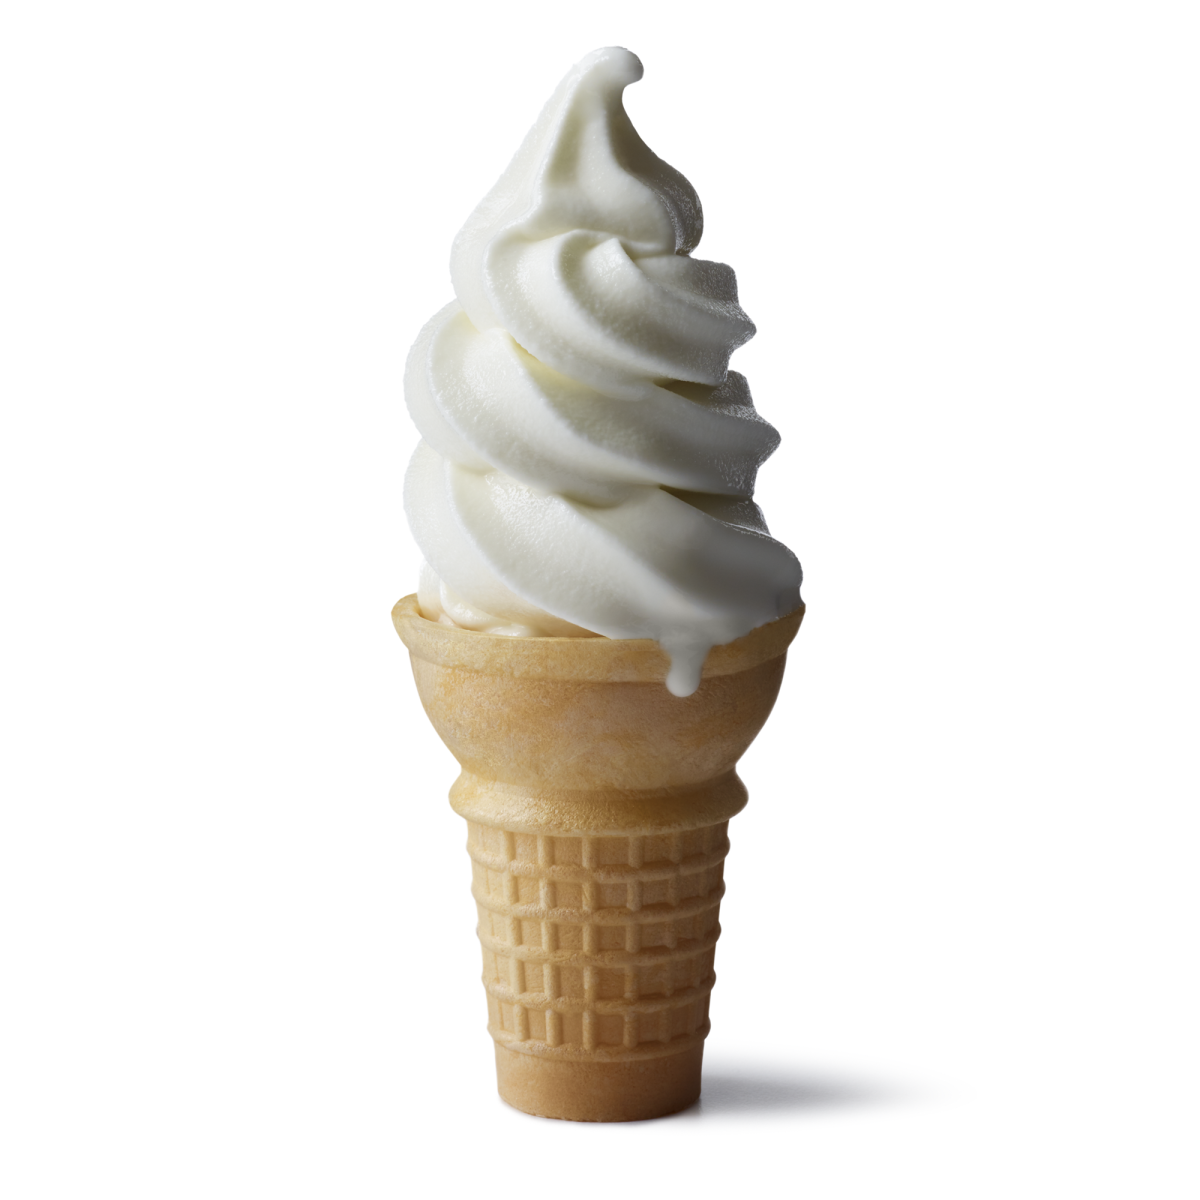 McDonald: macchine per i gelati McFlurry sempre guaste, aperta un'indagine  negli USA